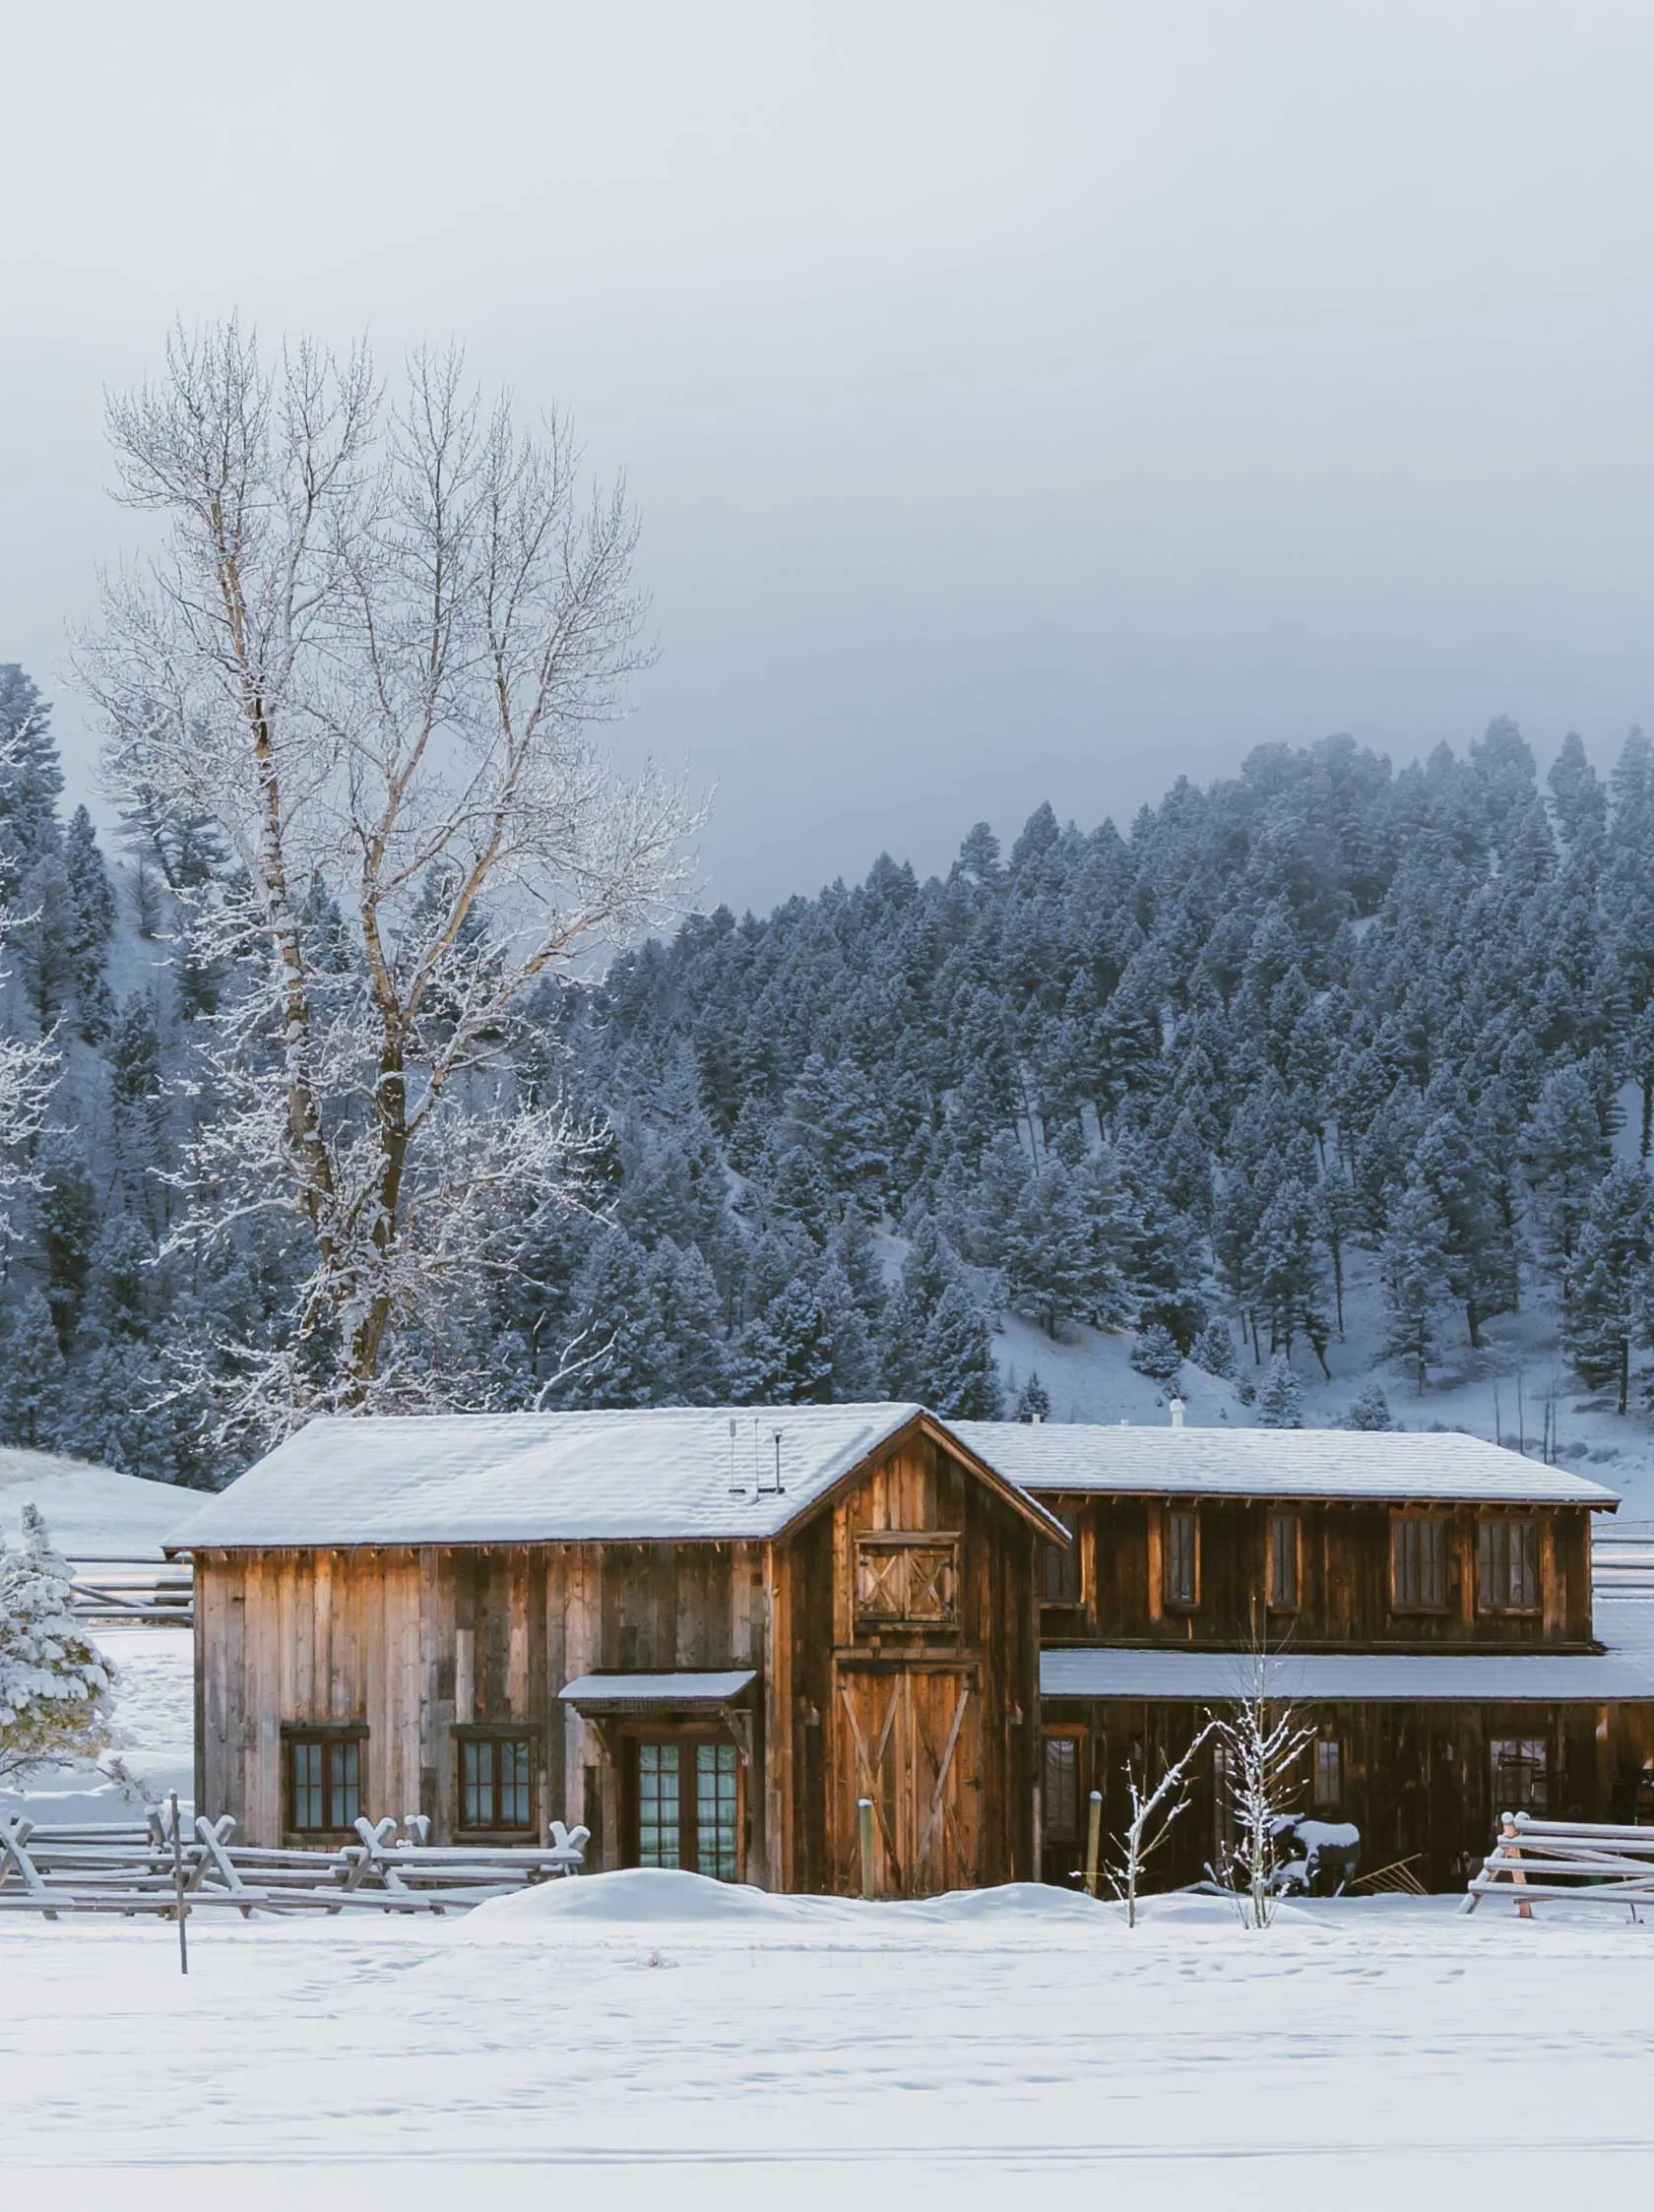 Barn in winter landscape